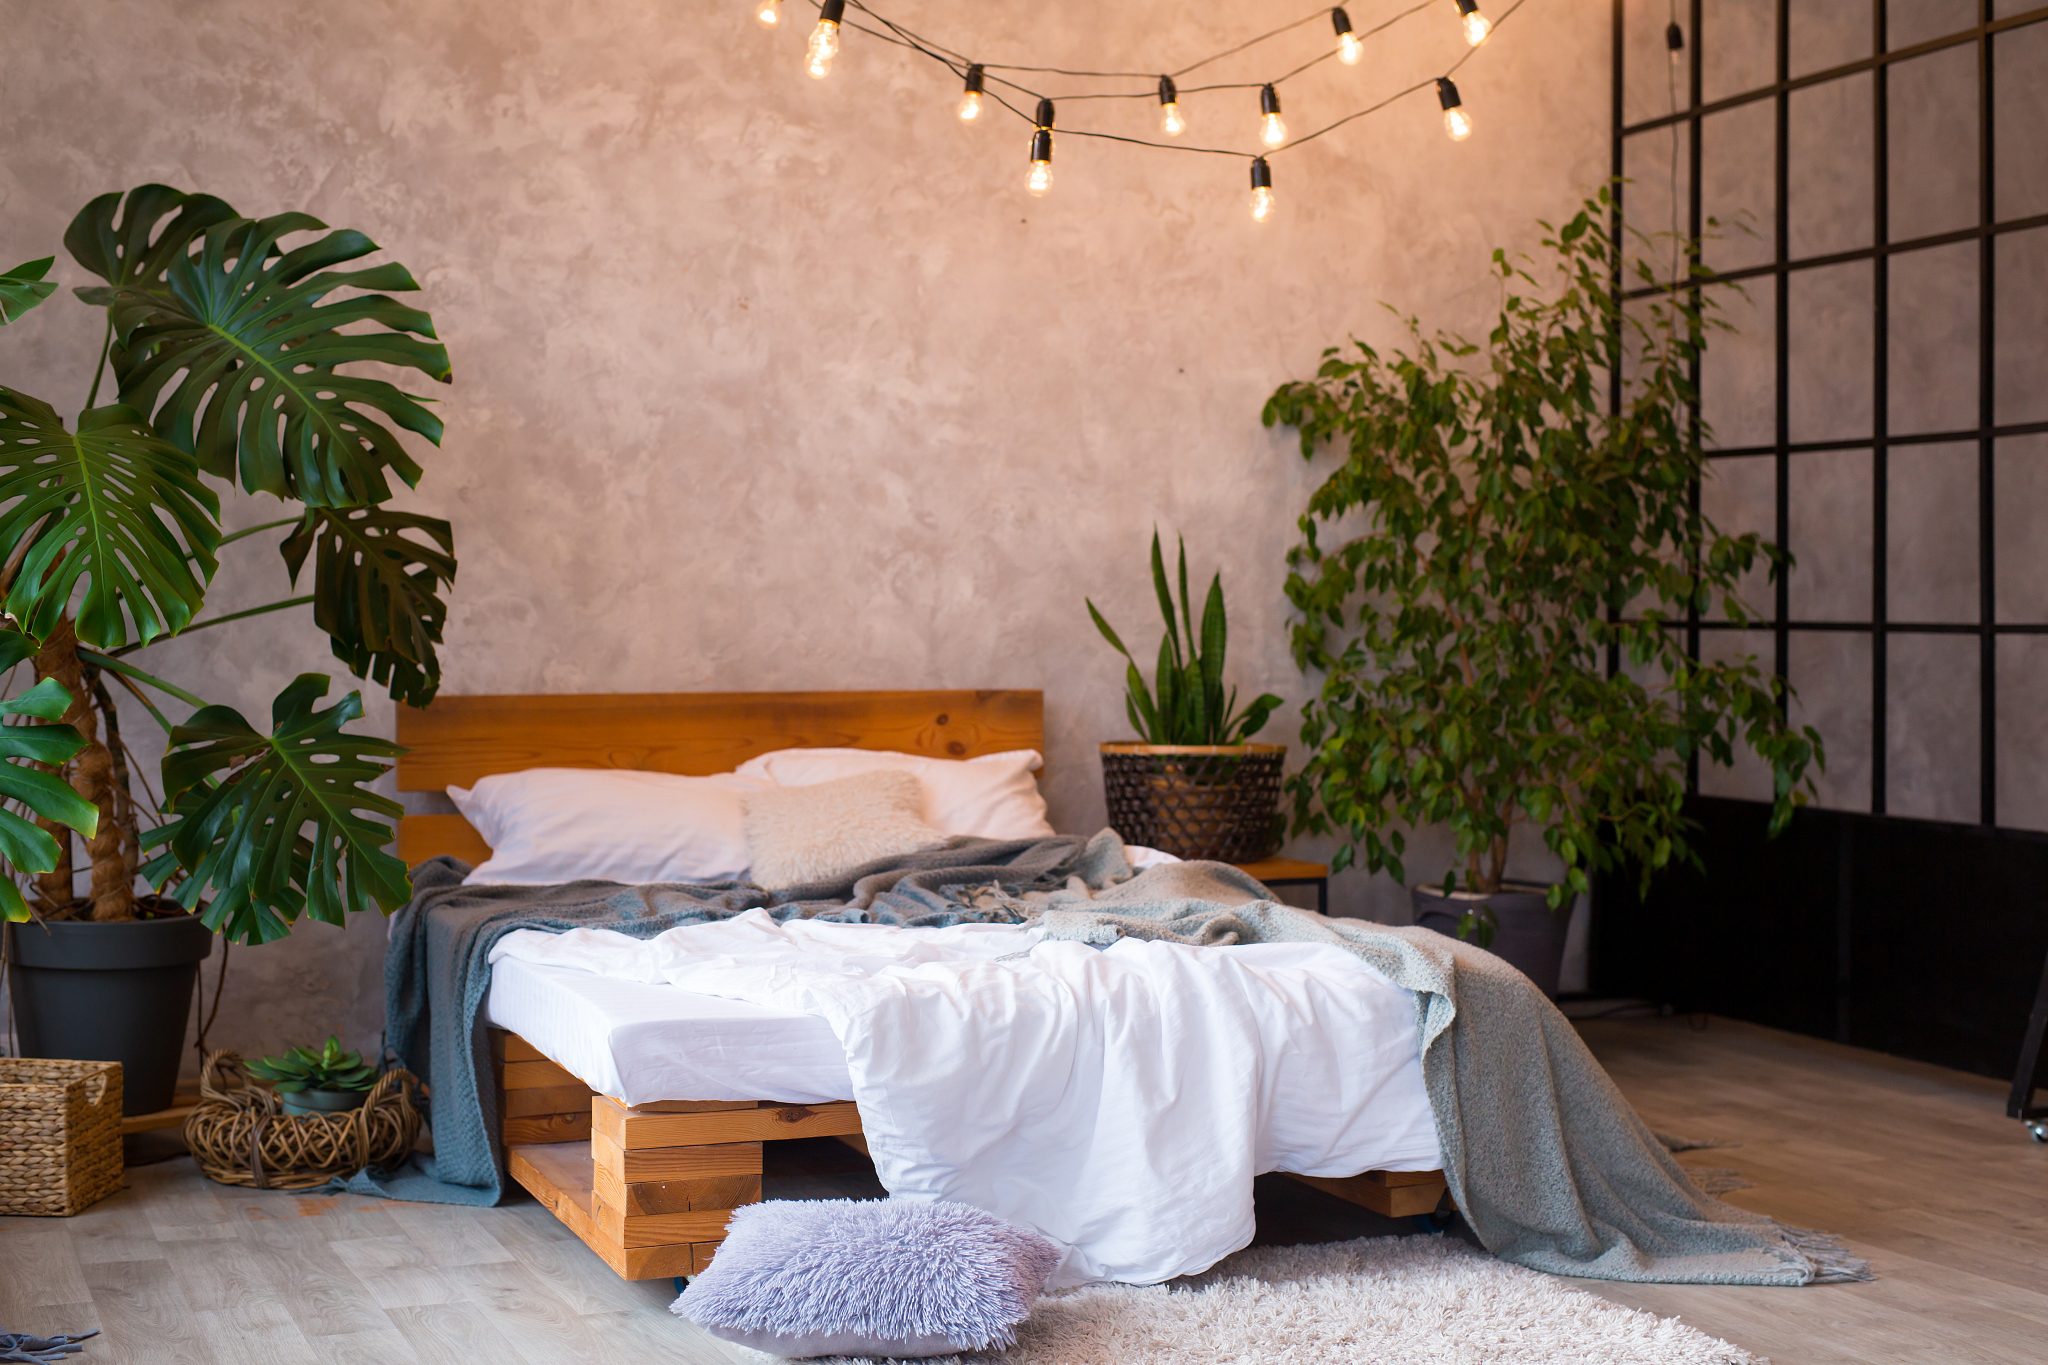 Diese-3-Zimmerpflanzen-berleben-auch-bei-wenig-Licht-in-der-Wohnung